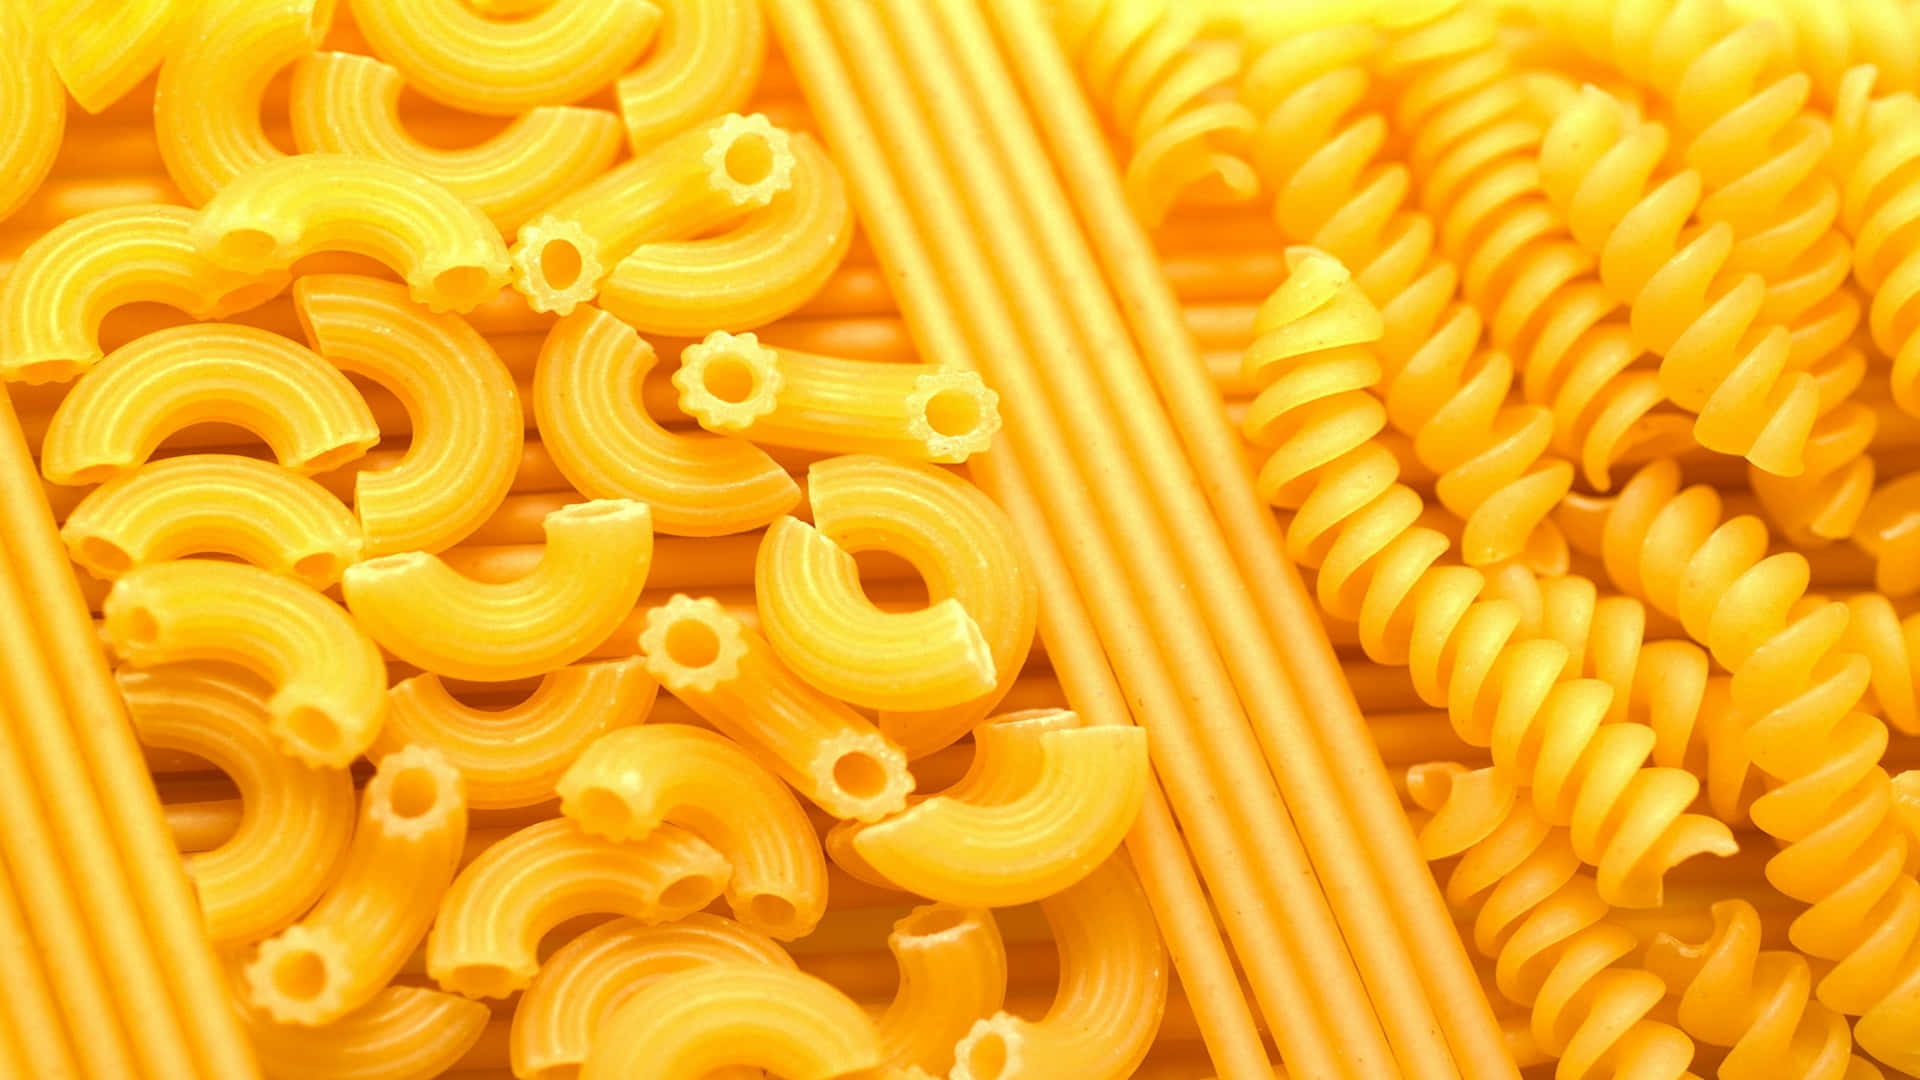 Forskellige typer pasta 1920x1080 Pasta baggrund Vores computer baggrund.